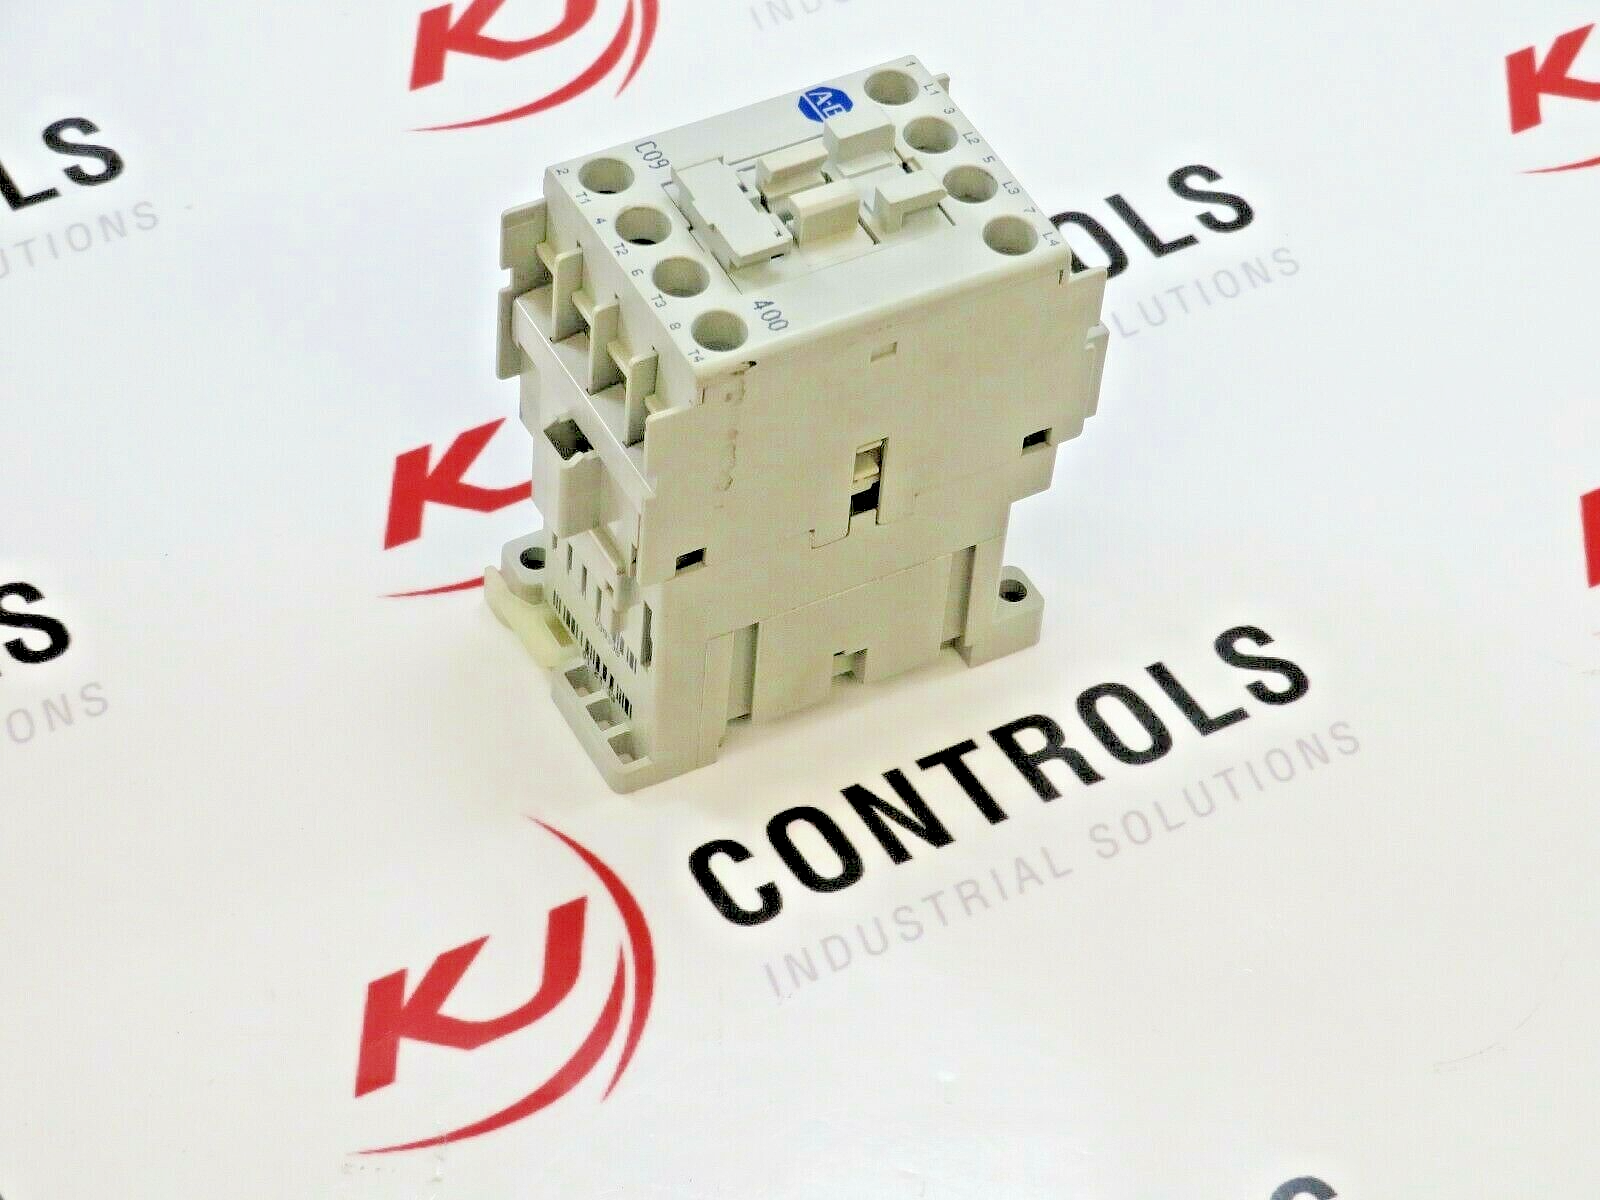 Allen-Bradley 100-C09D400 Contactor 9A Contacts 120VAC Coil